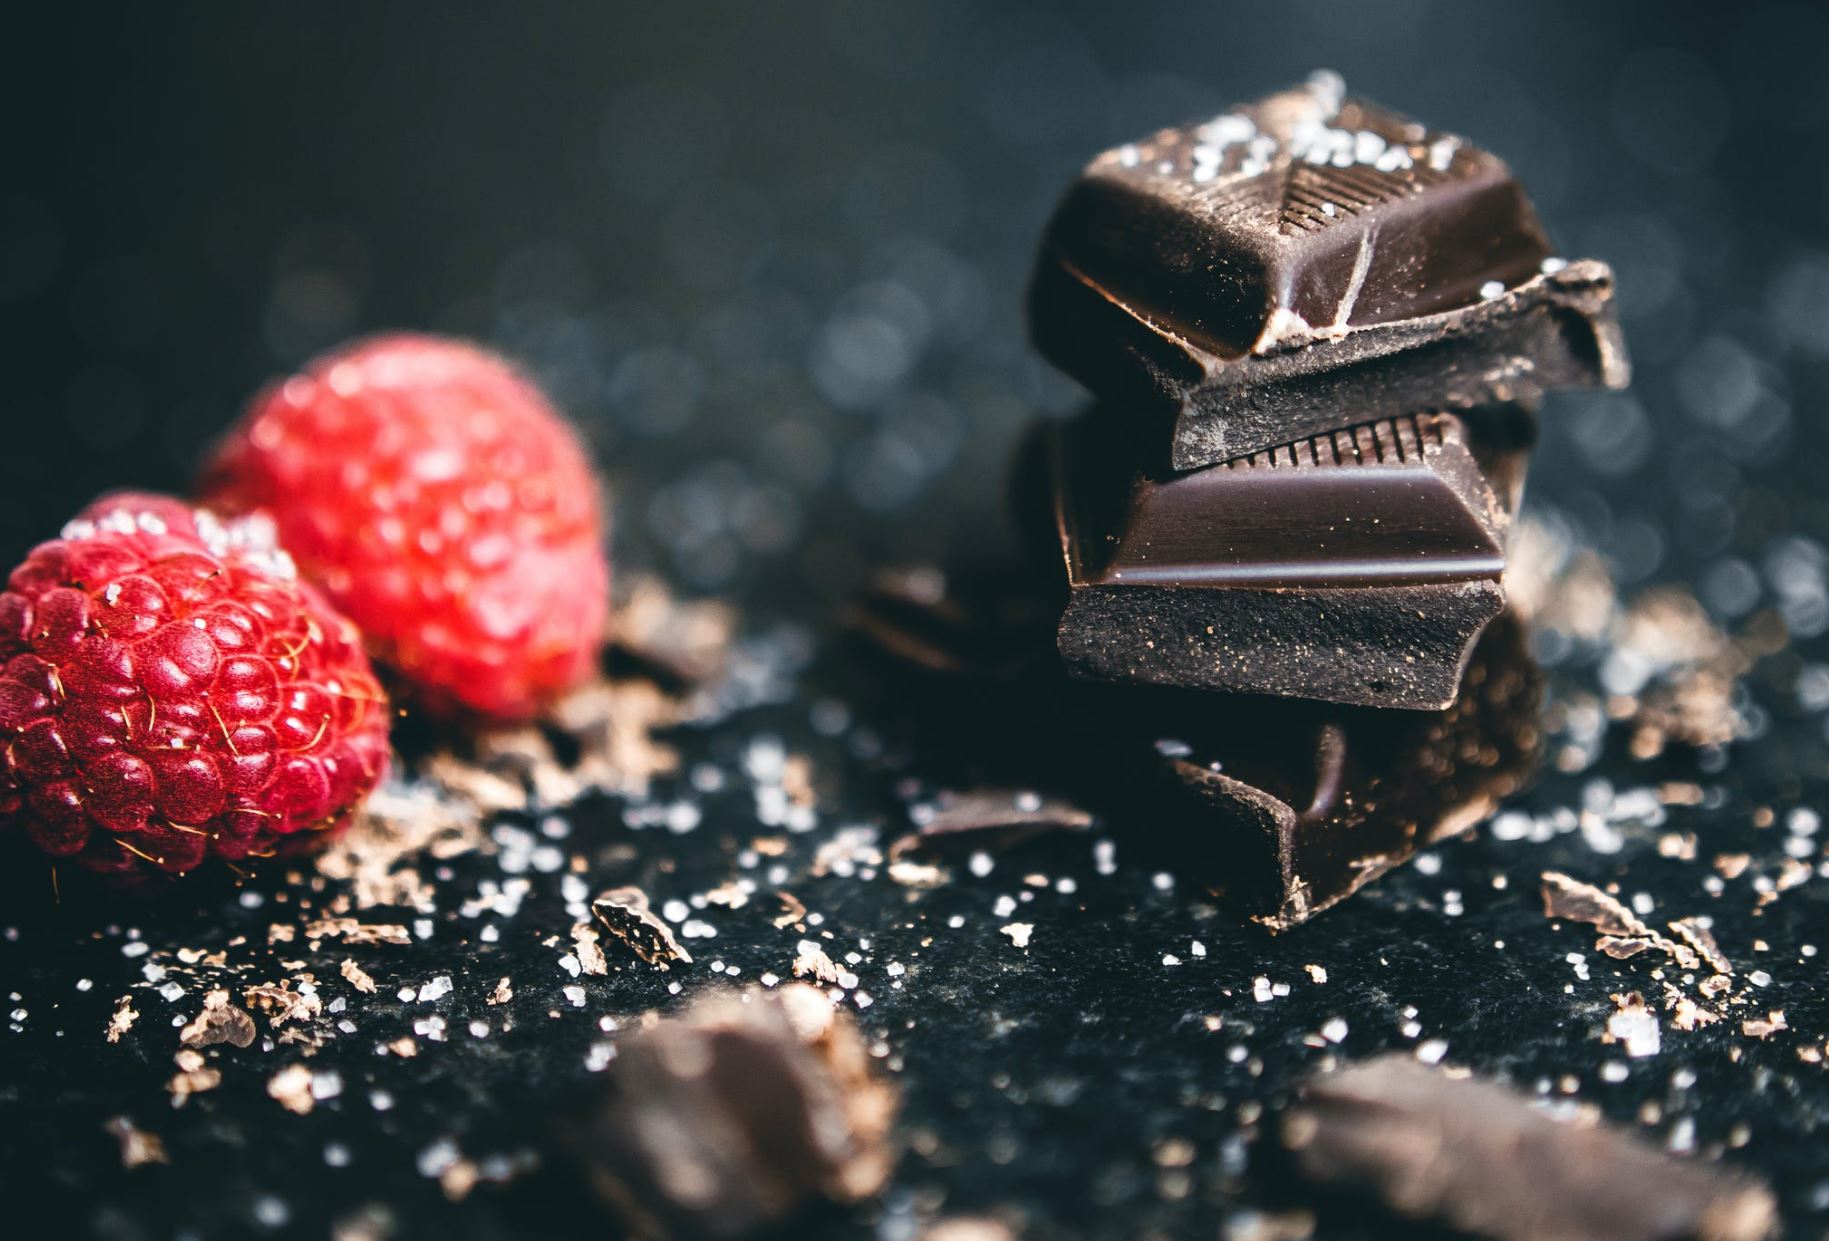 Çokollata e zezë na bën më të lumtur, ja çfarë kanë zbuluar studiuesit